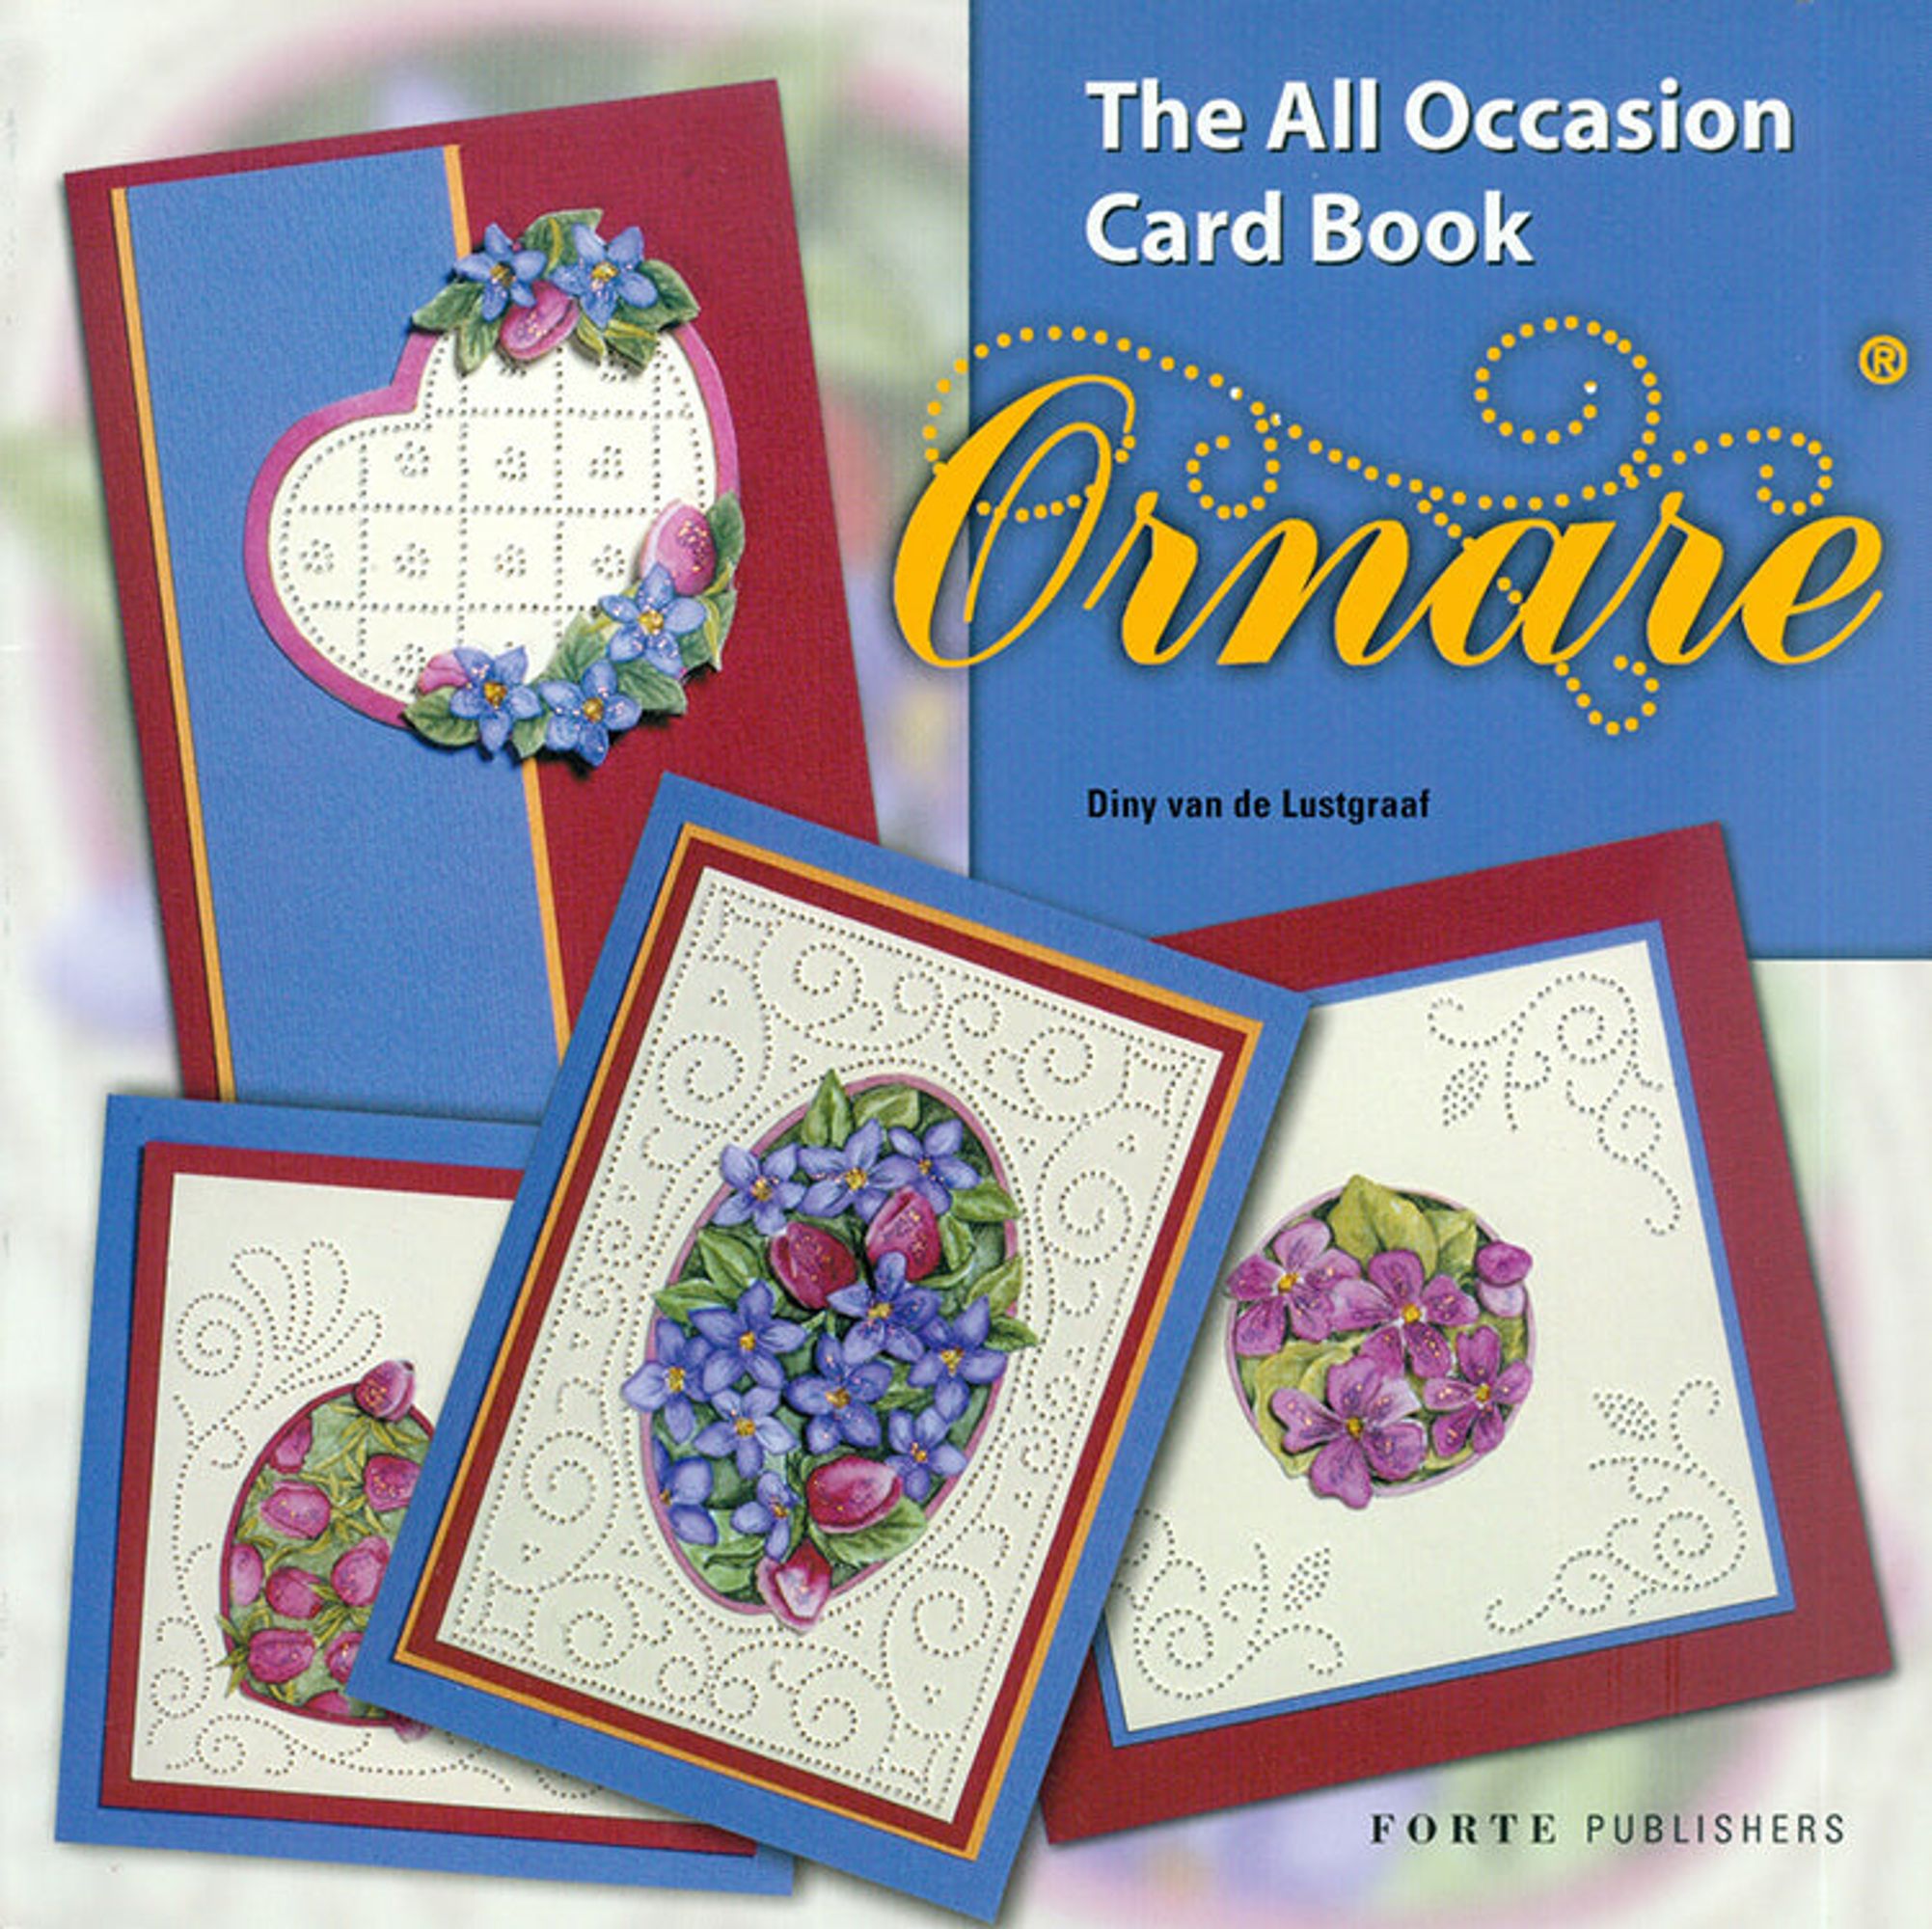 Ornare - All Occasion Card Book